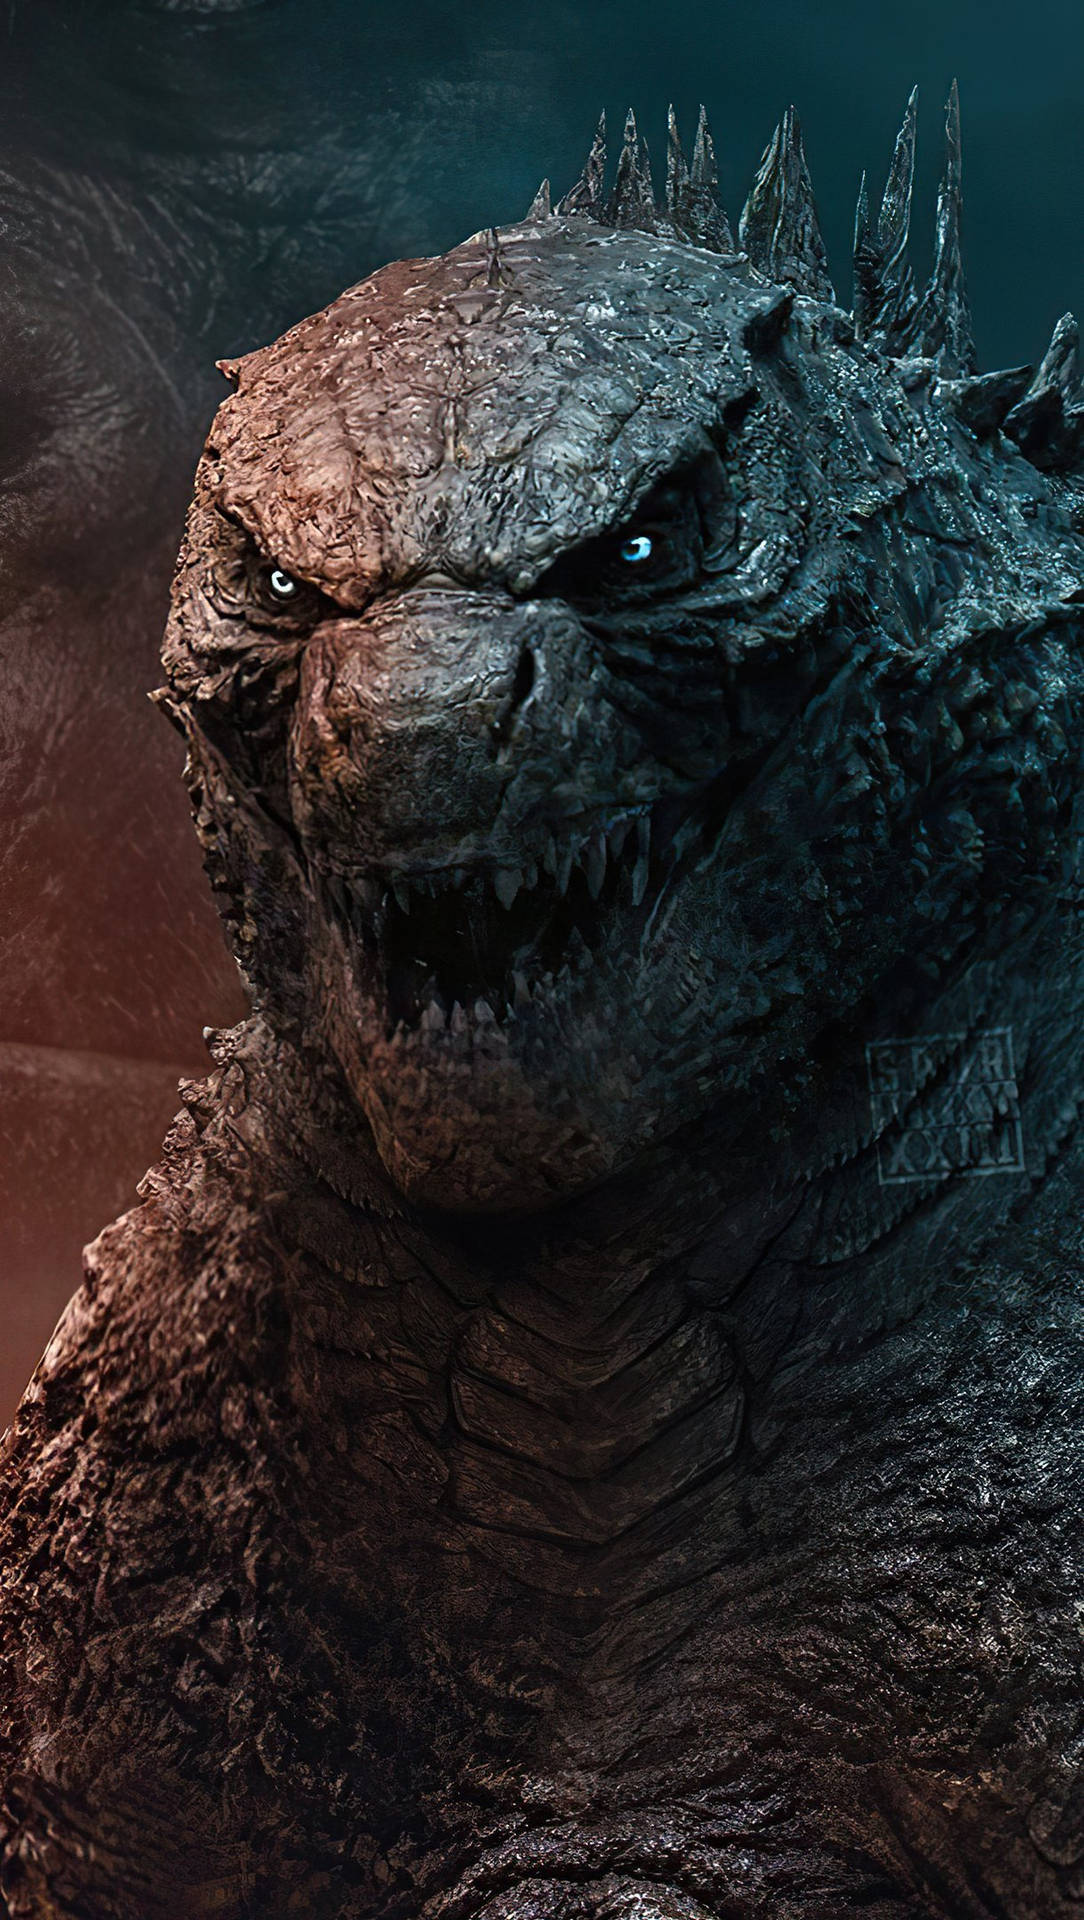 Fondode Pantalla Hd De Godzilla: Rey De Los Monstruos. Fondo de pantalla